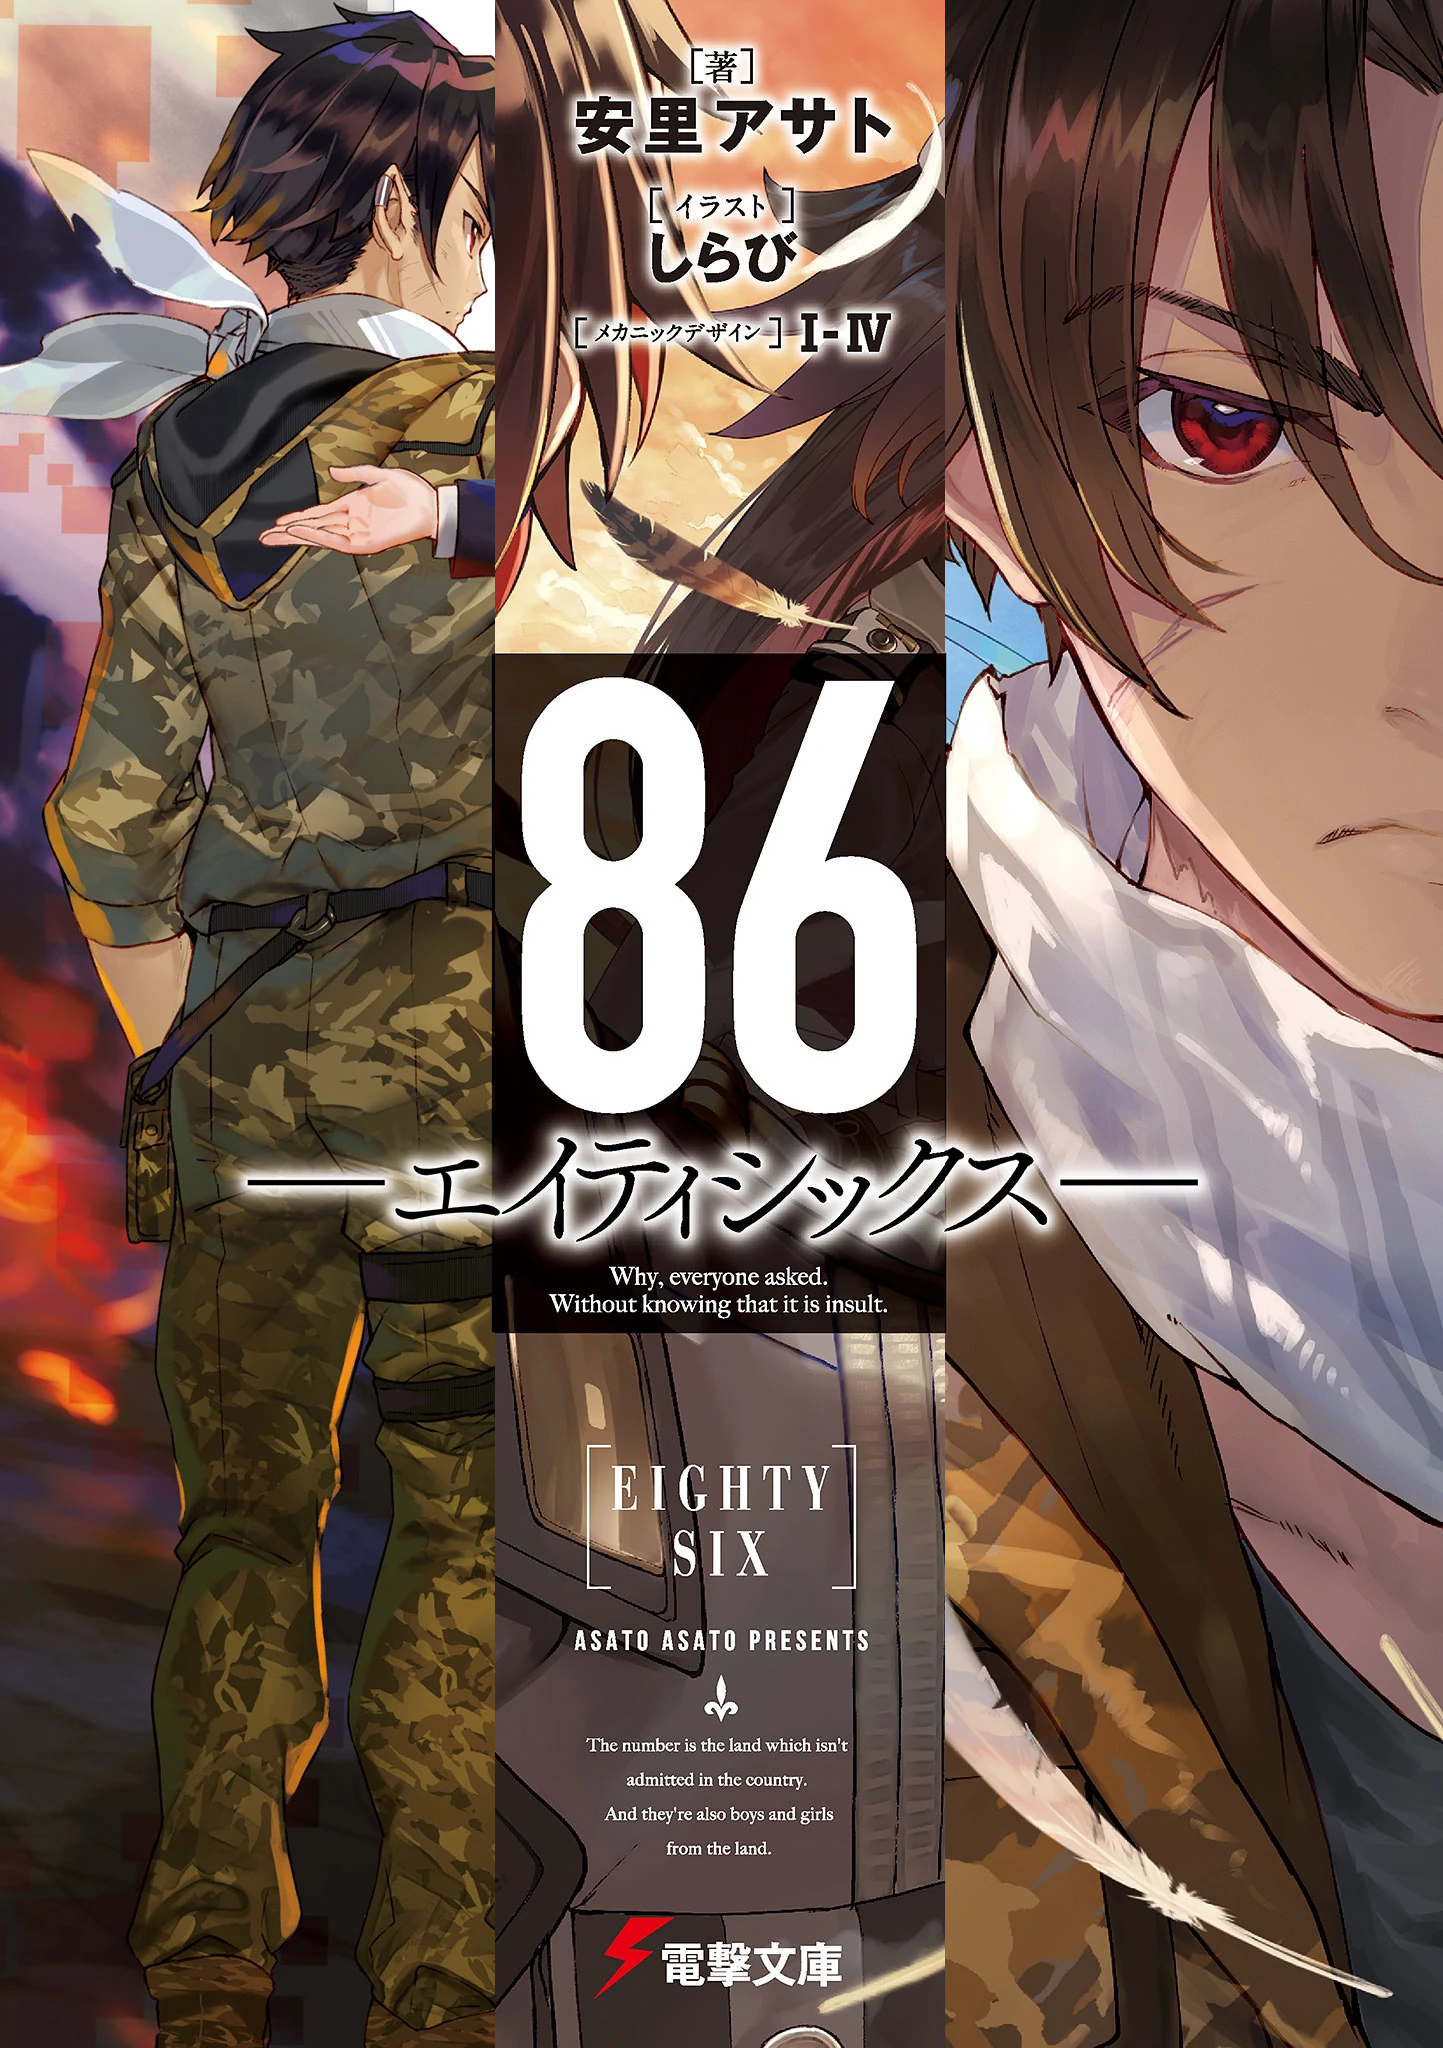 86--EIGHTY-SIX, Vol. 1 (light novel) ebook by Asato Asato - Rakuten Kobo